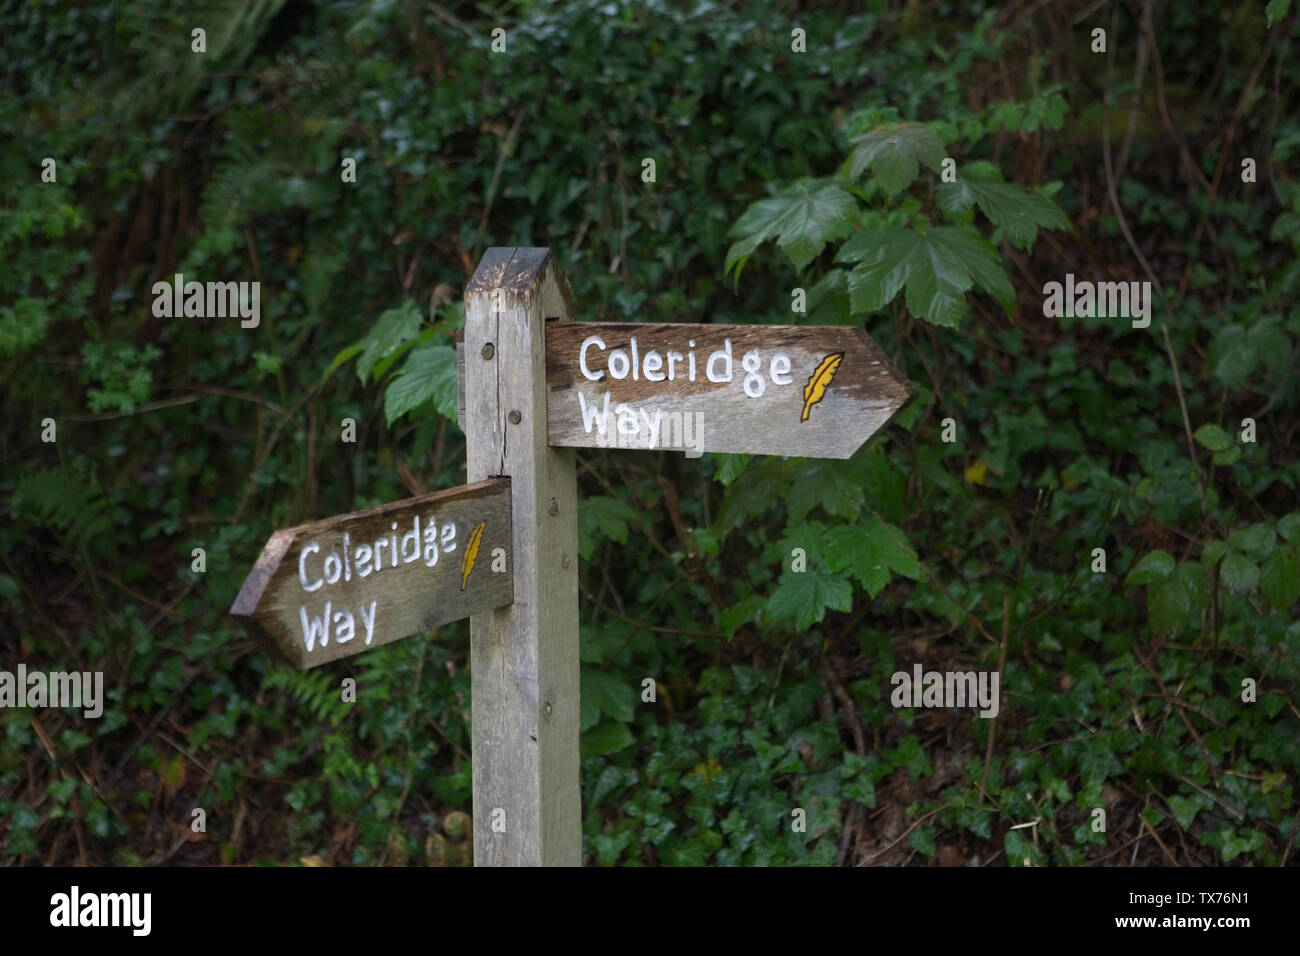 Coleridge modo segno che indica il percorso del poeta romantico Samuel Taylor Coleridge Foto Stock